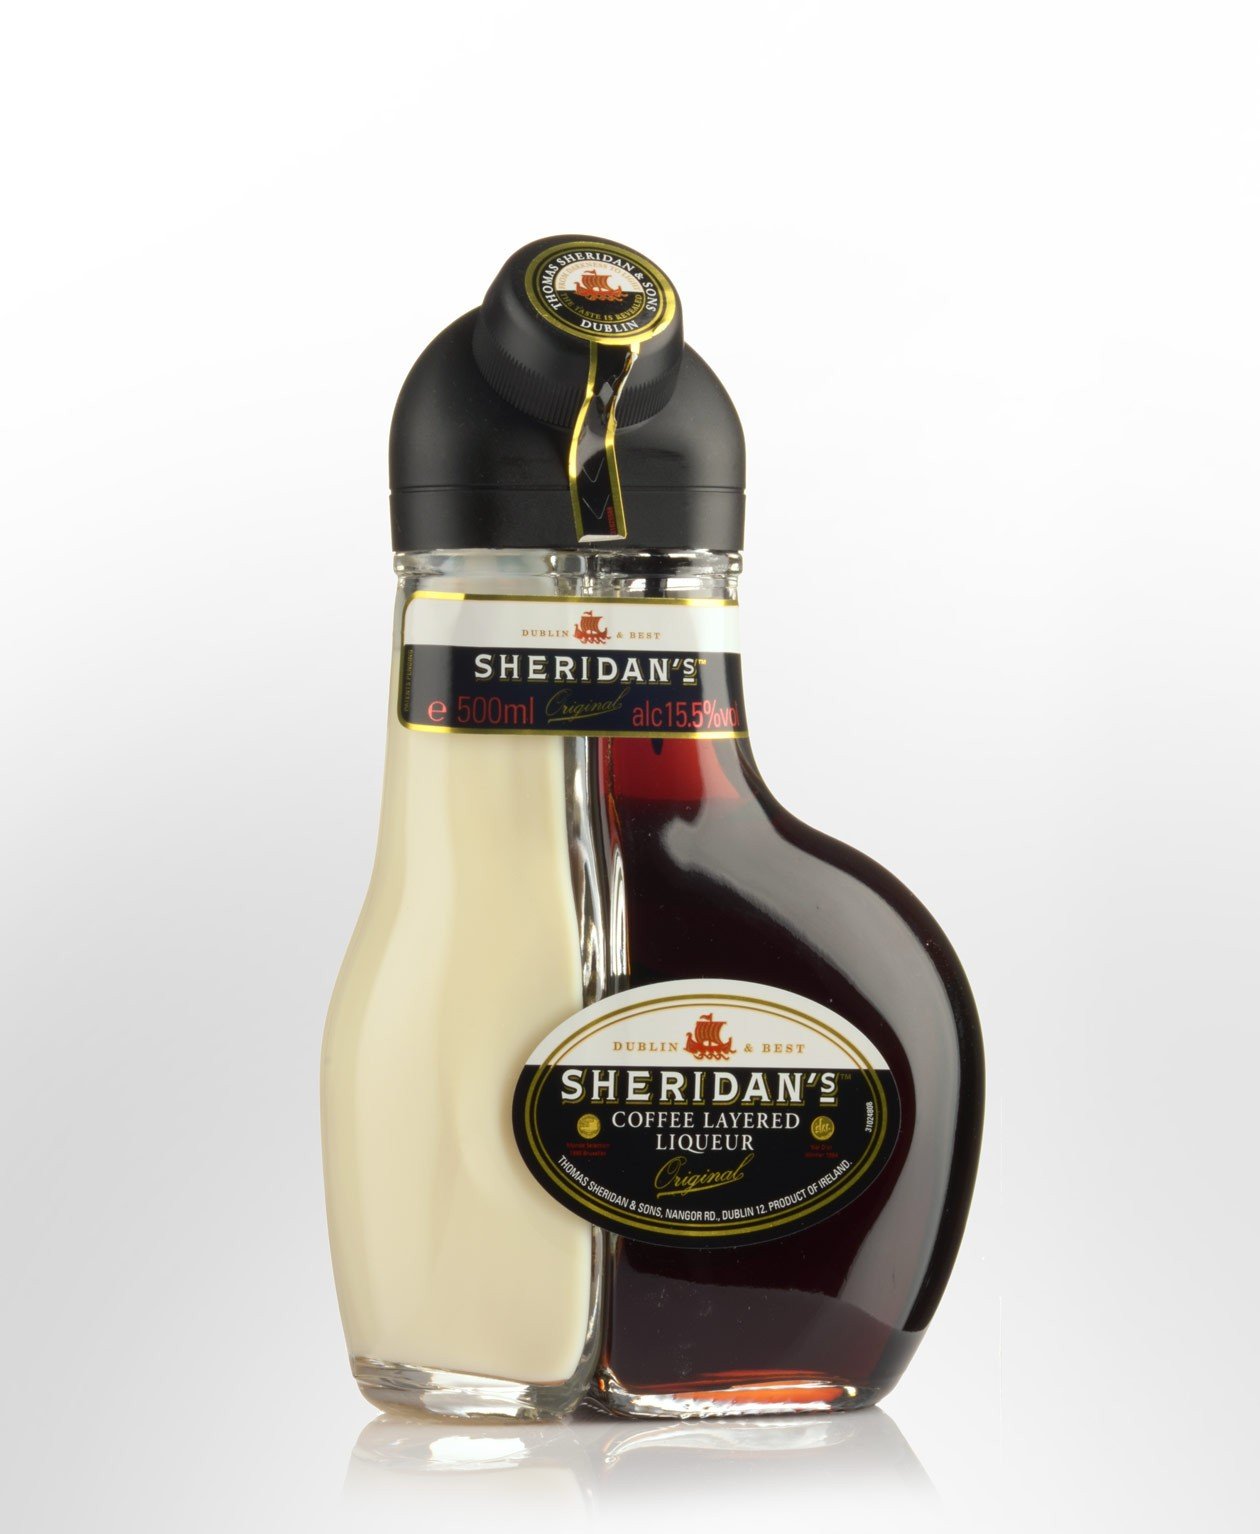 Кофейный алкогольный. Ликер черри Шериданс. Ликер Sheridan's Original Coffee layered Liqueur. Белис Шеридан. Бейлис и Шериданс.